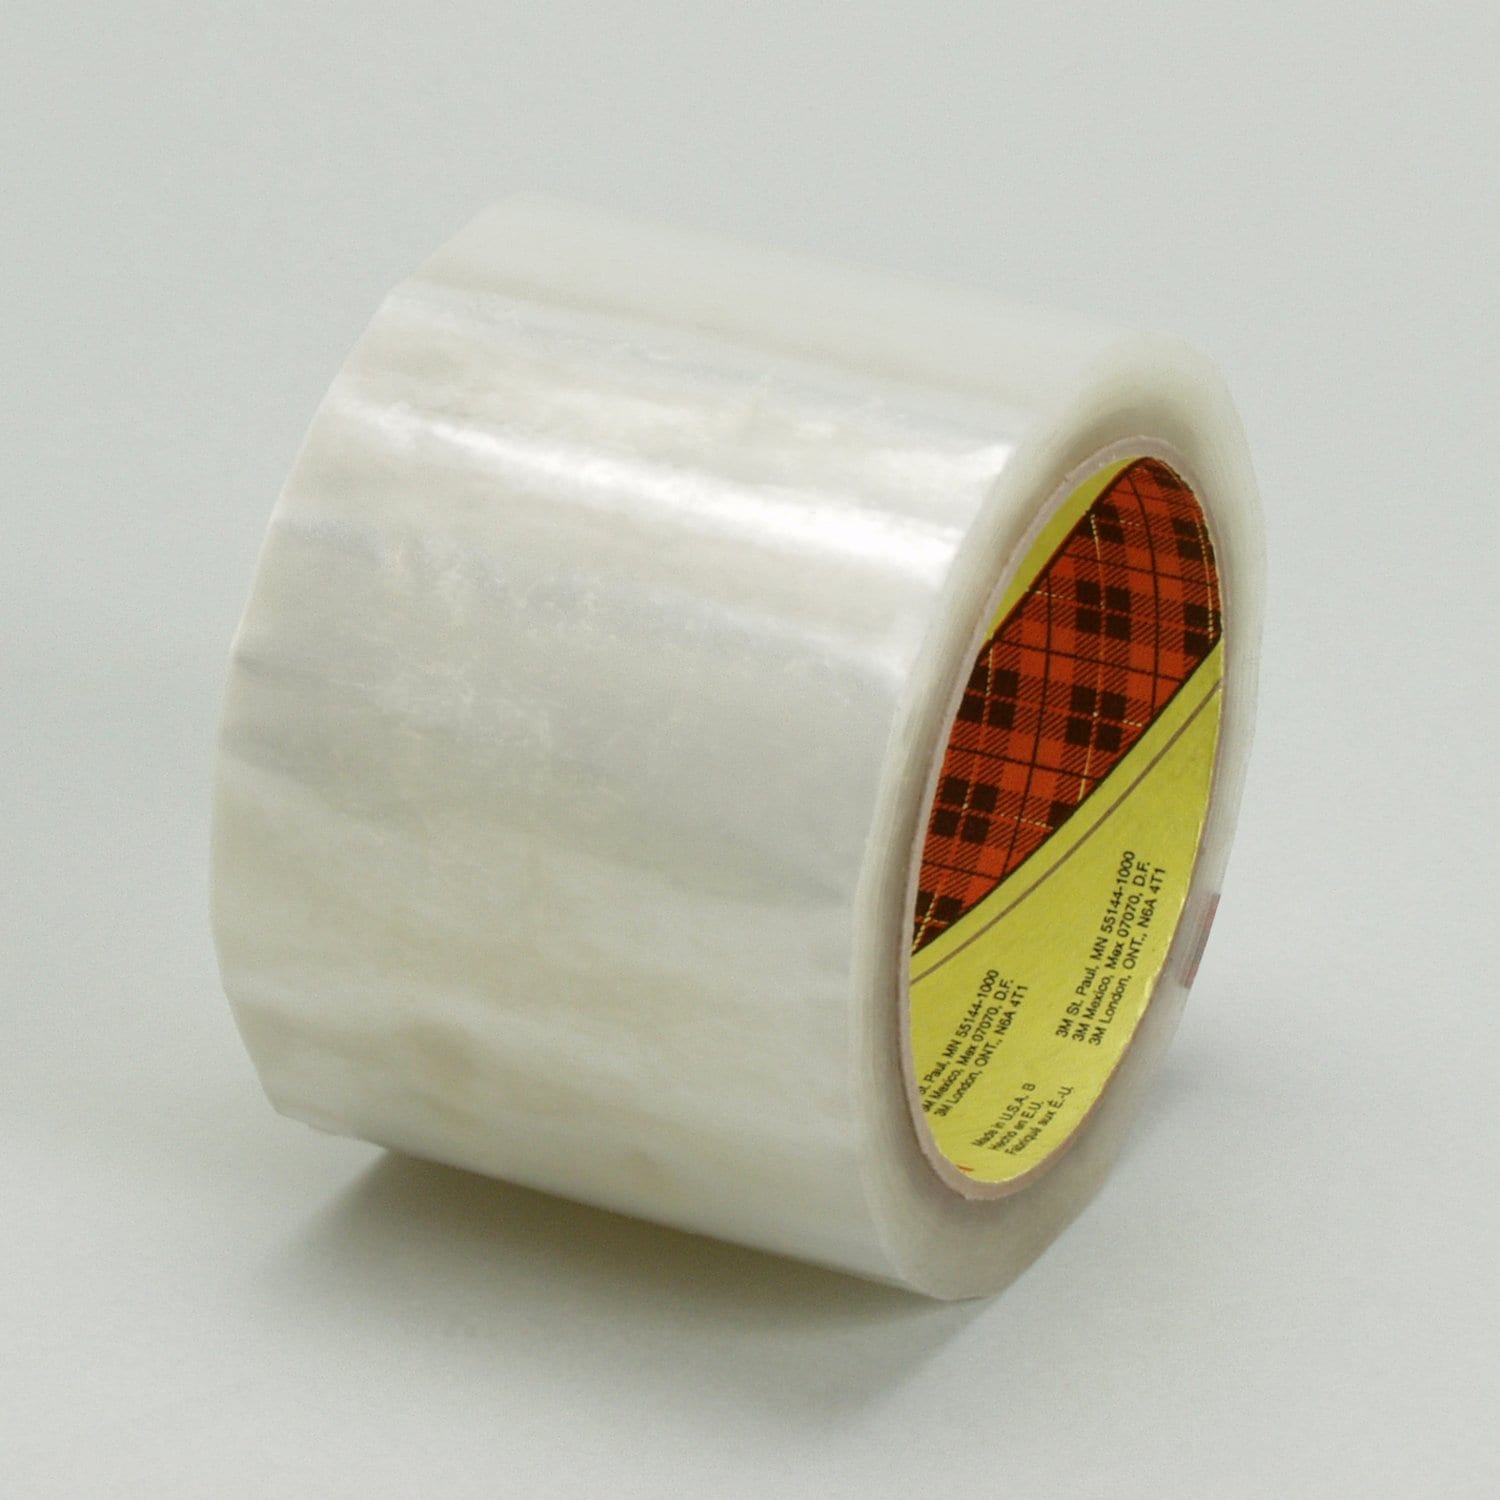 7010313058 - Scotch Box Sealing Tape 371, Clear, 36 mm x 1500 m, 8/Case